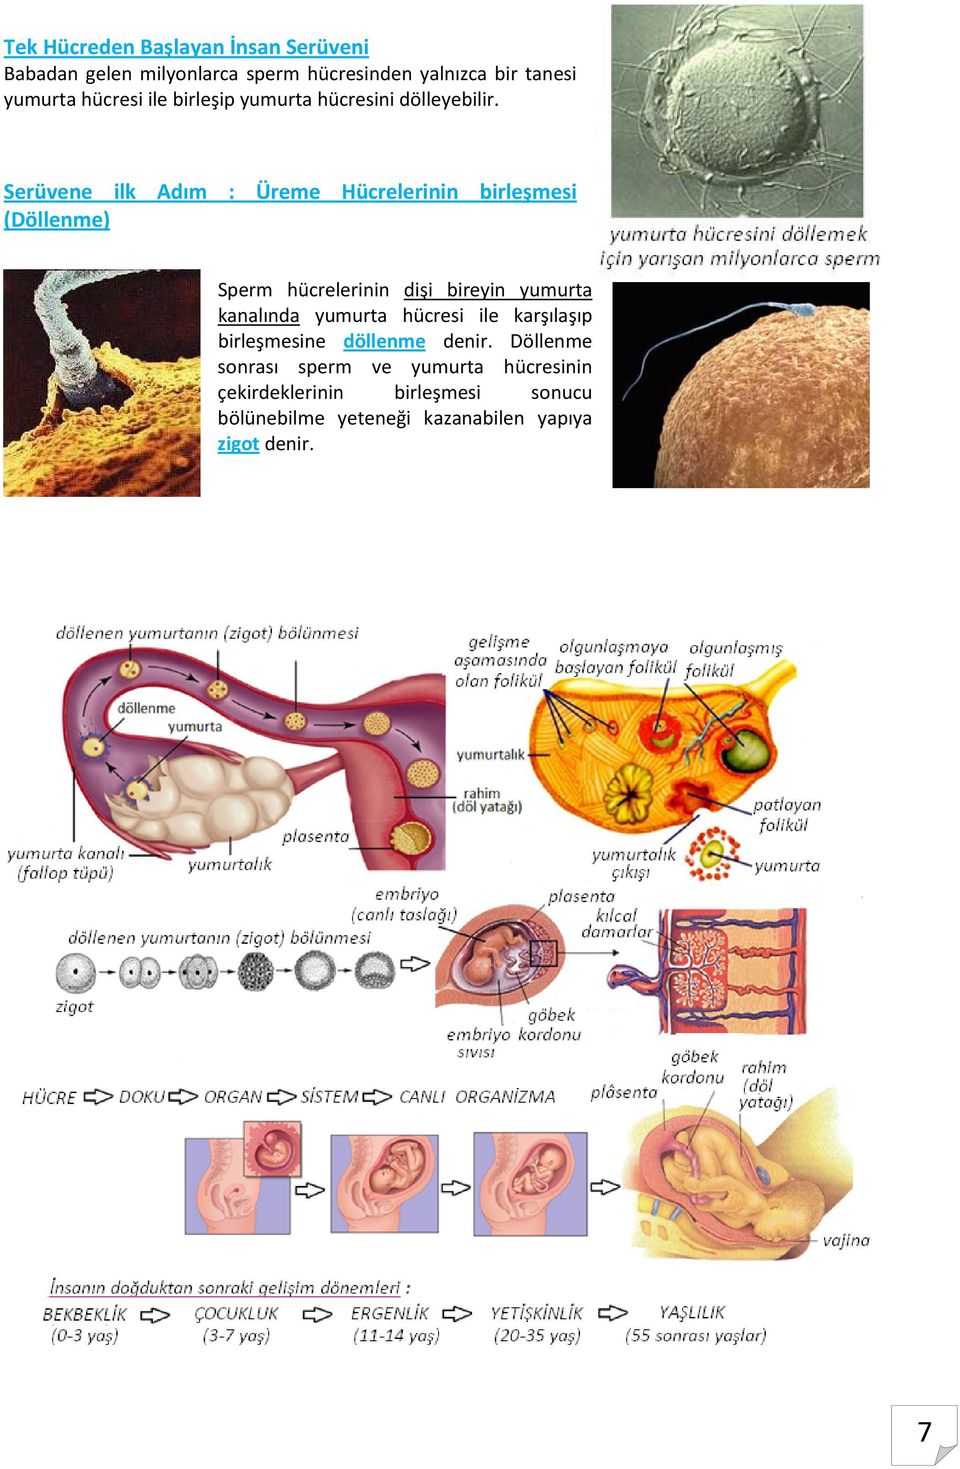 Serüvene ilk Adım : Üreme Hücrelerinin birleşmesi (Döllenme) Sperm hücrelerinin dişi bireyin yumurta kanalında